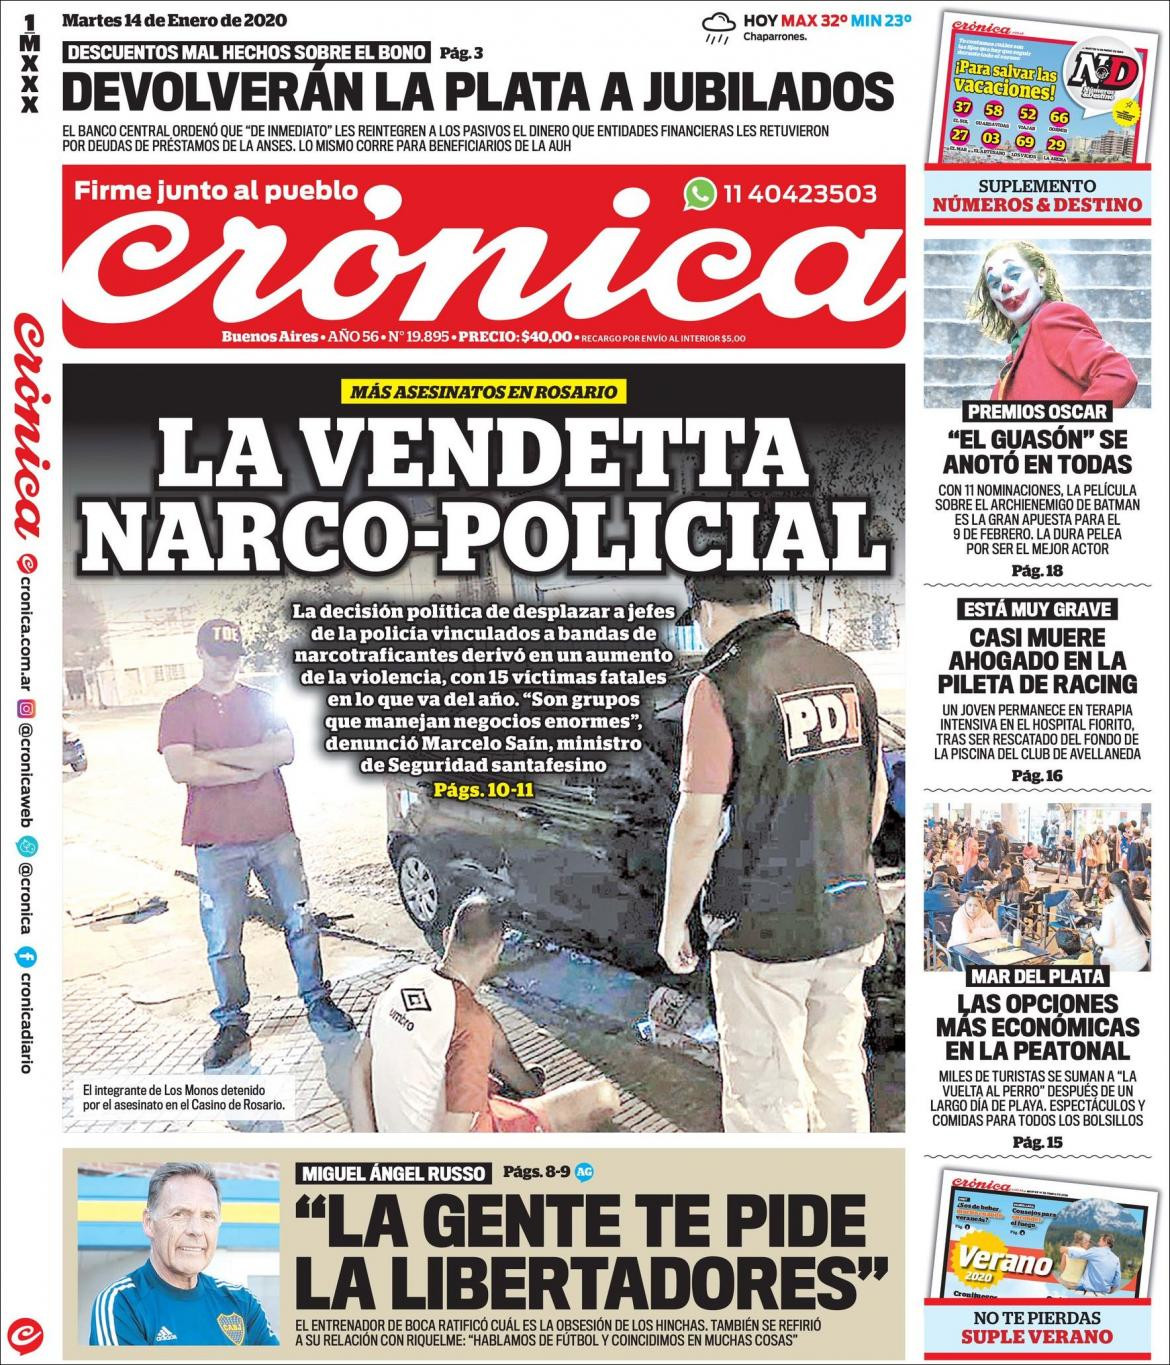 Tapas de diarios, Crónica, martes 14 de enero de 2020